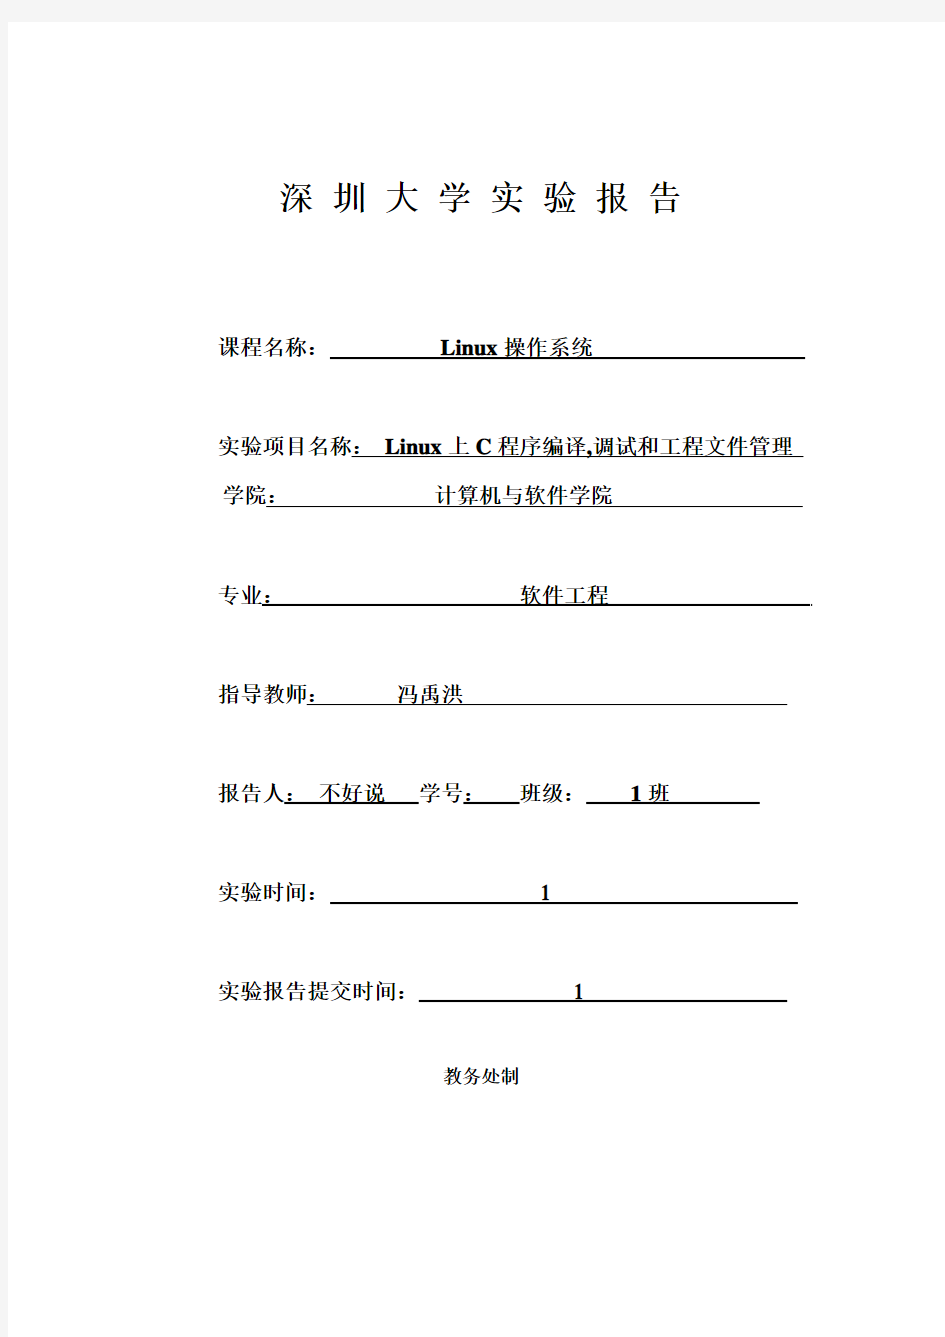 深圳大学linux课程大作业,嘻嘻你懂的